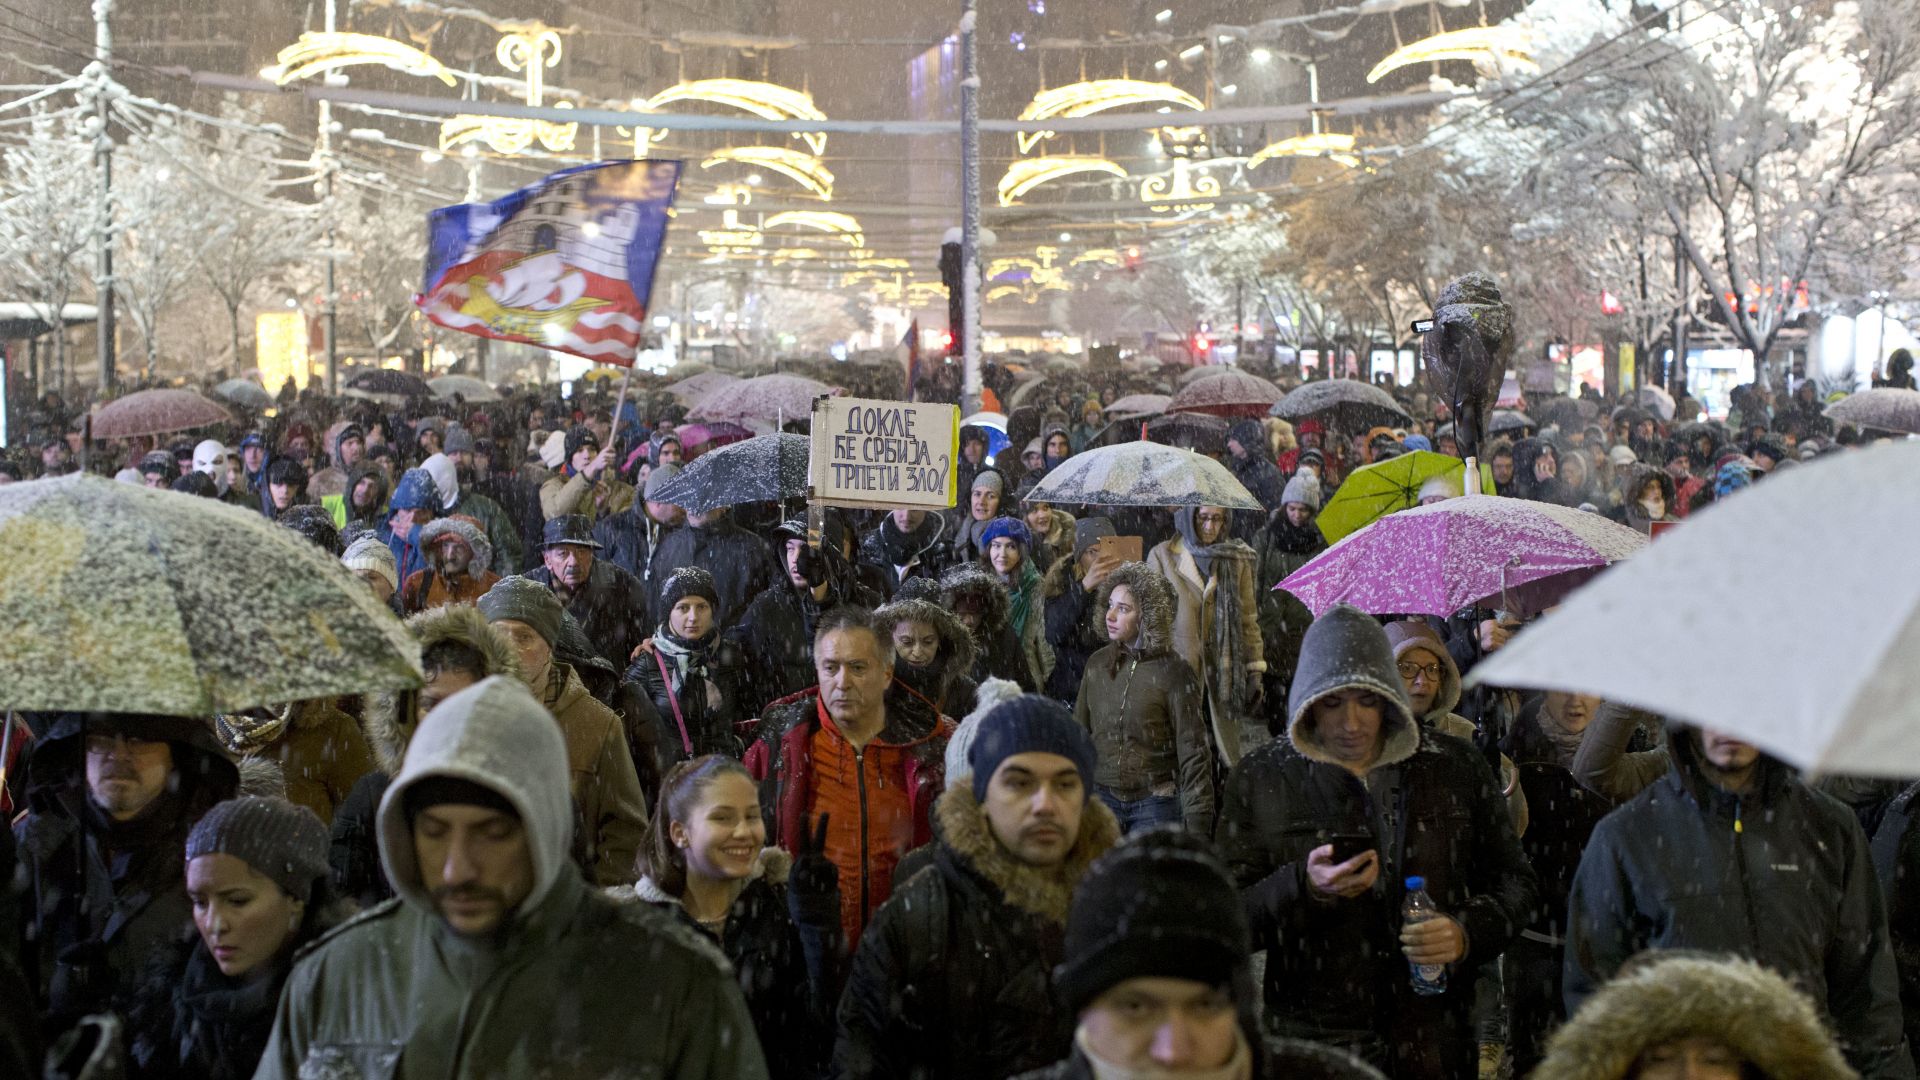 Въпреки снега и студа хиляди демонстранти се събраха днес в